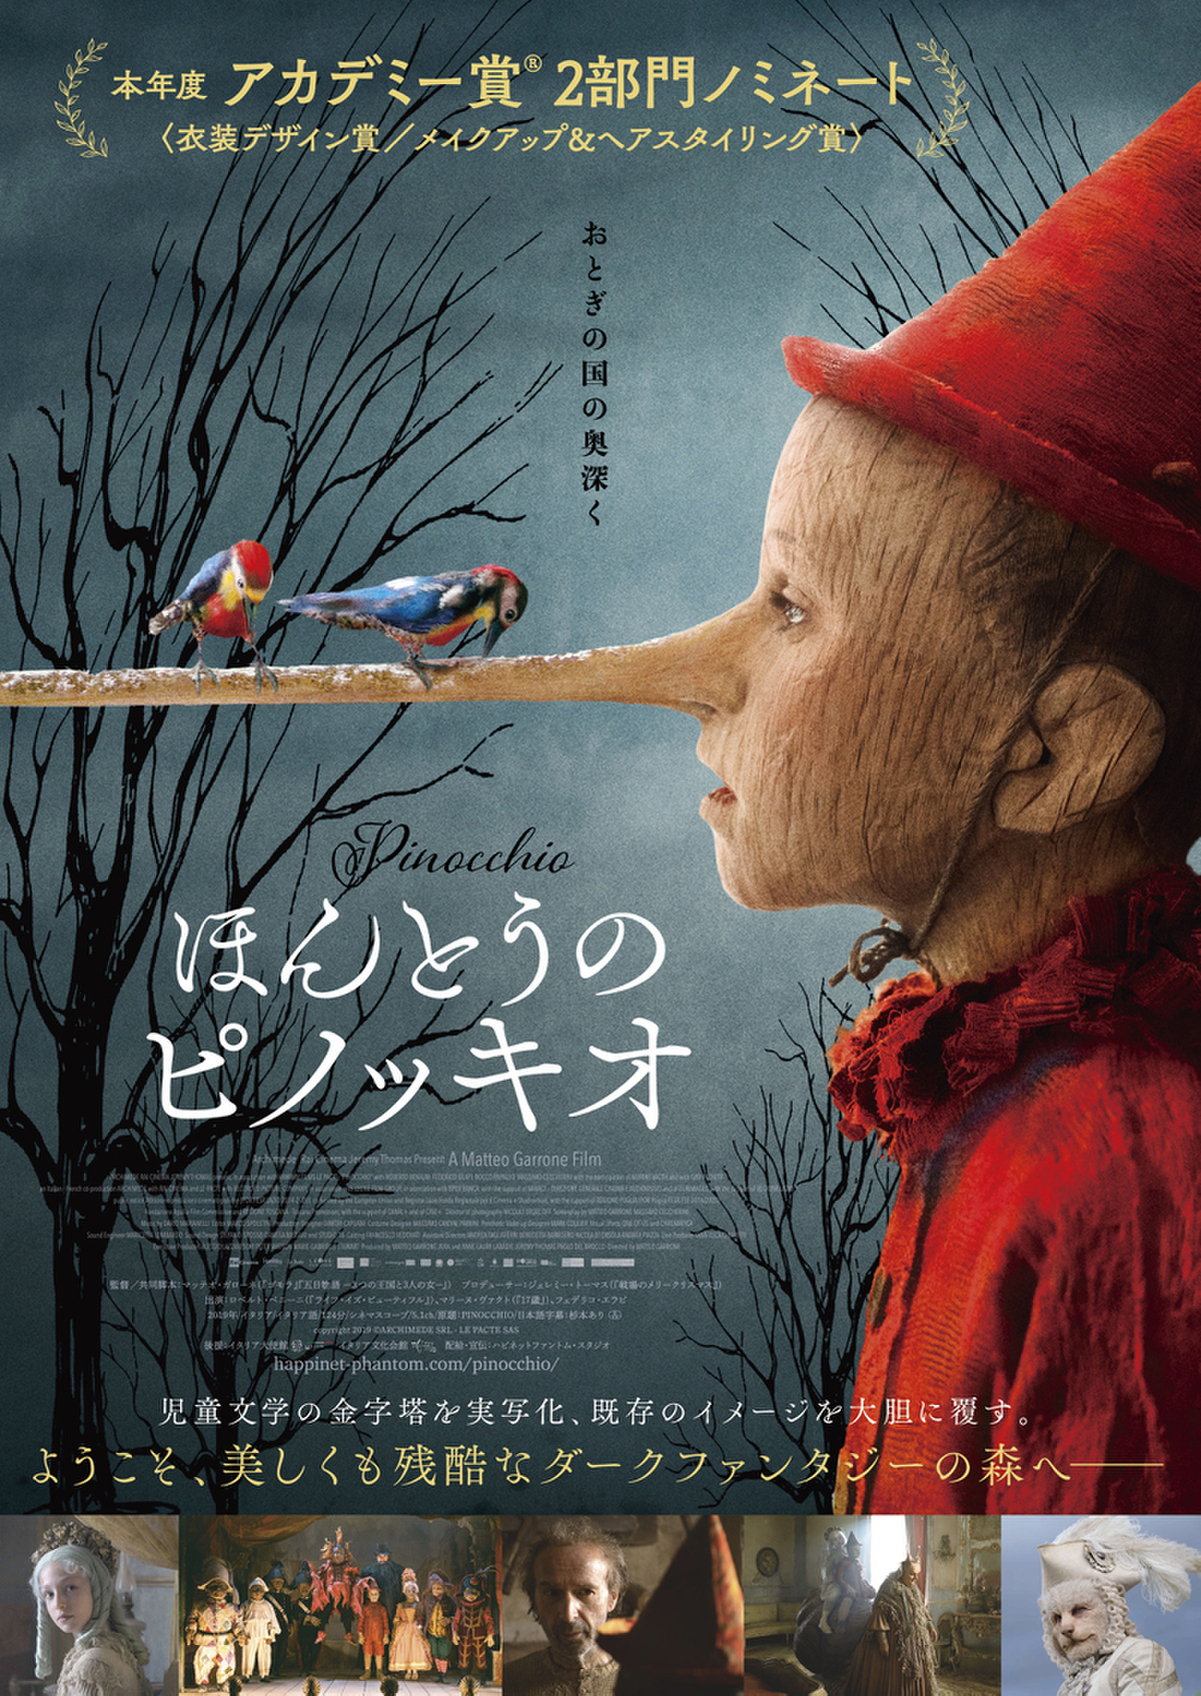 ピノッキオ の本当の姿を知っていますか アカデミー賞ノミネートのダークファンタジー 11月5日公開 映画ニュース 映画 Com